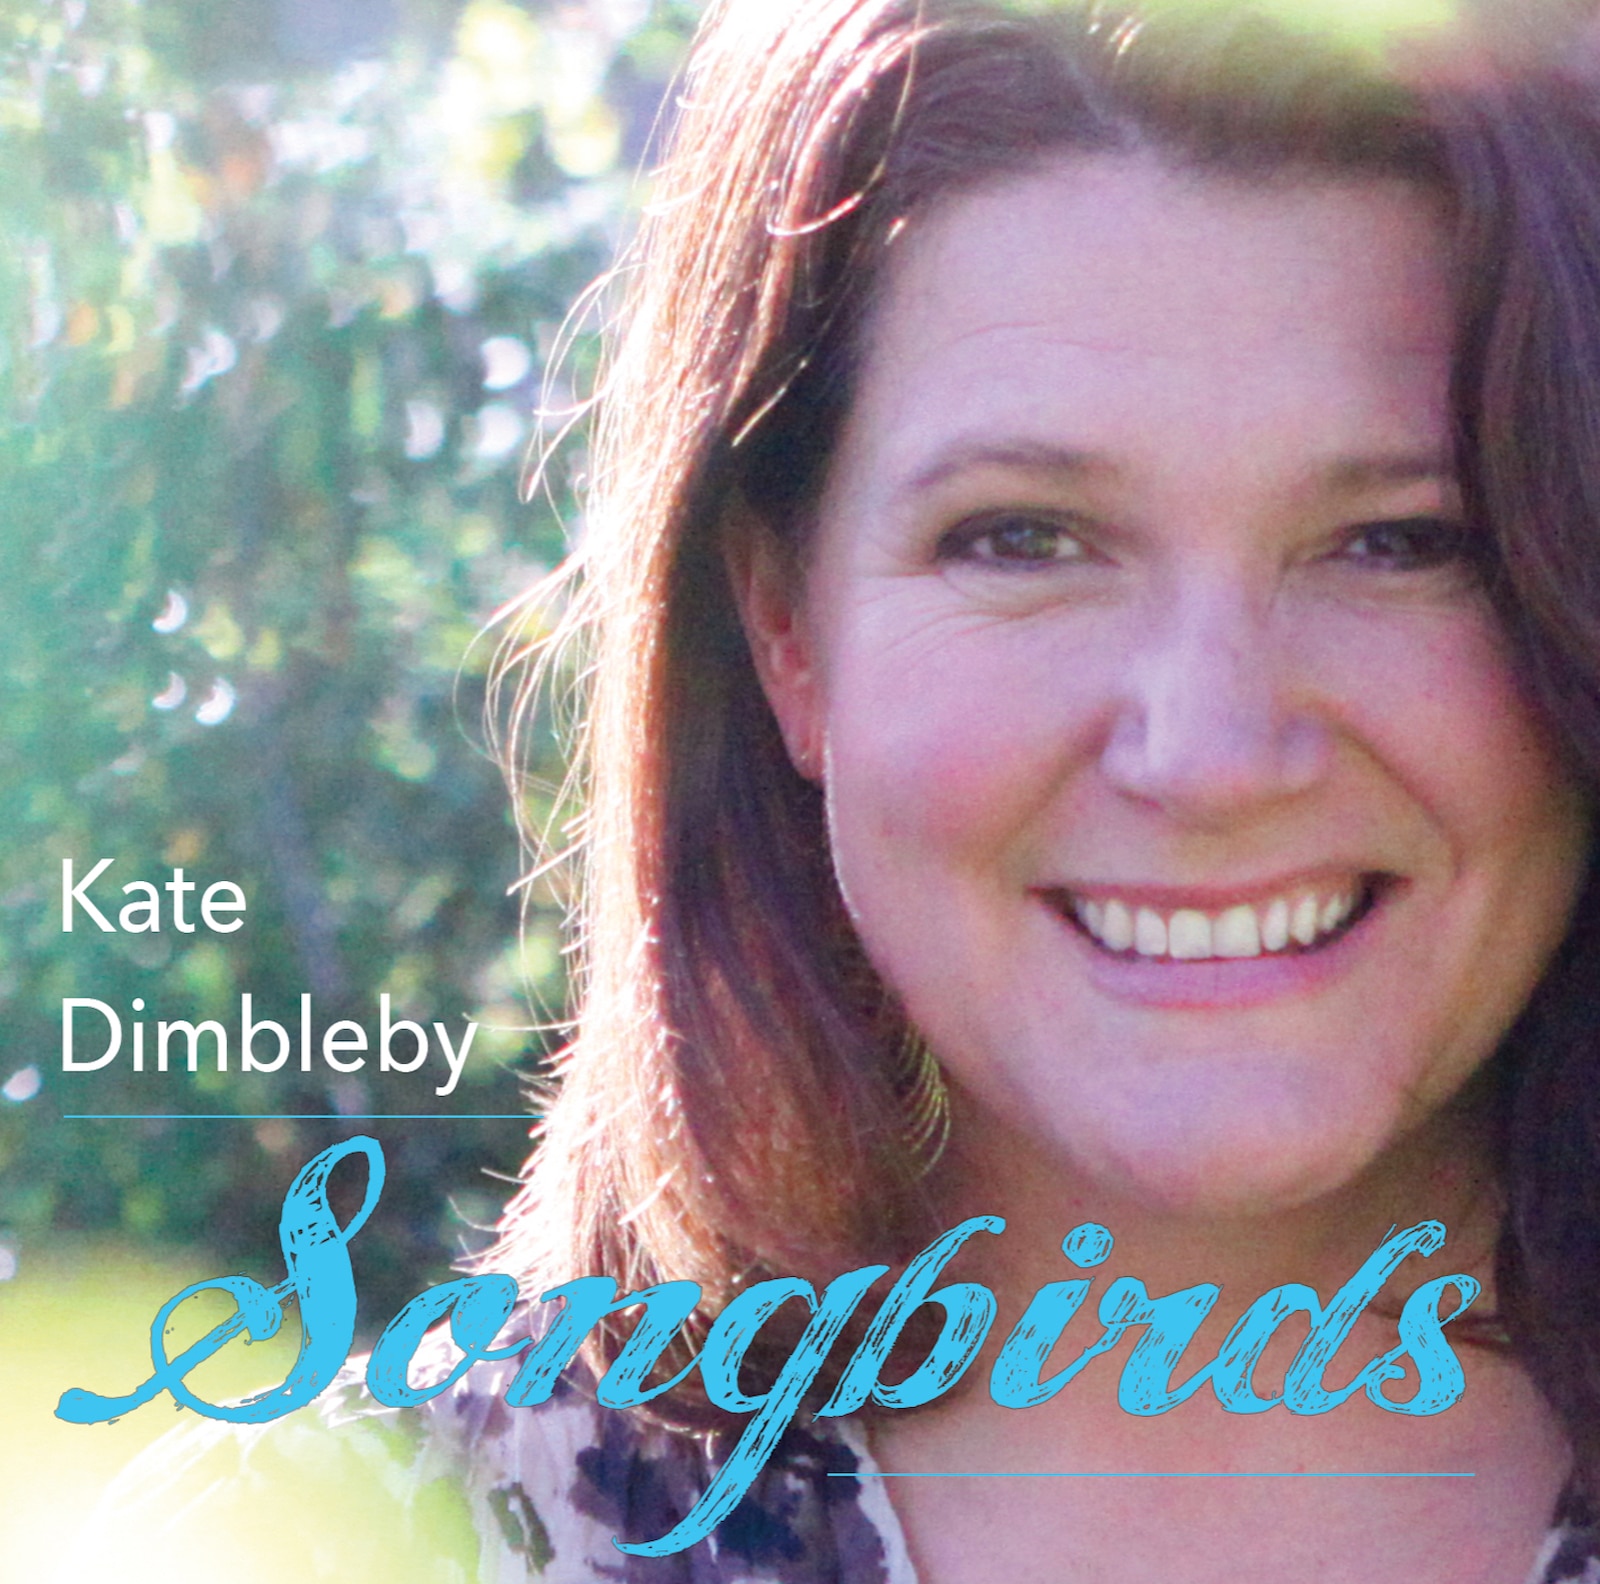 Songbirds Album Cover - Kate Dimbleby (Folkstock Records, 2017)